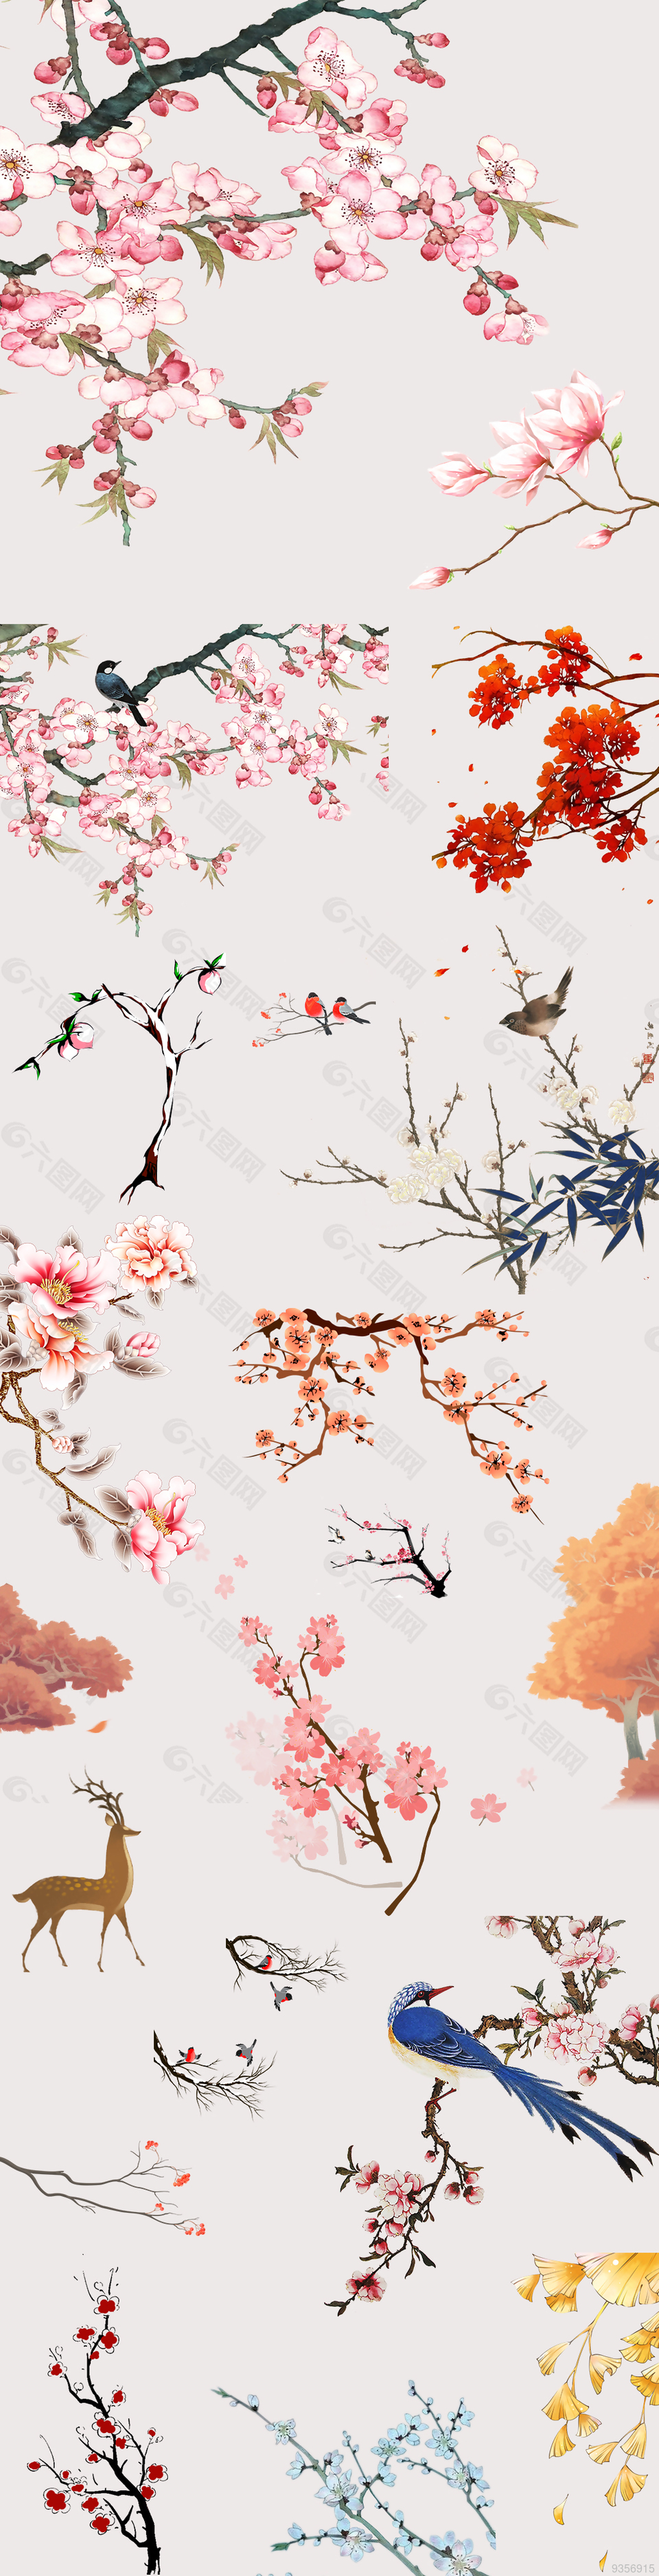 中国风手绘花鸟植物素材集合